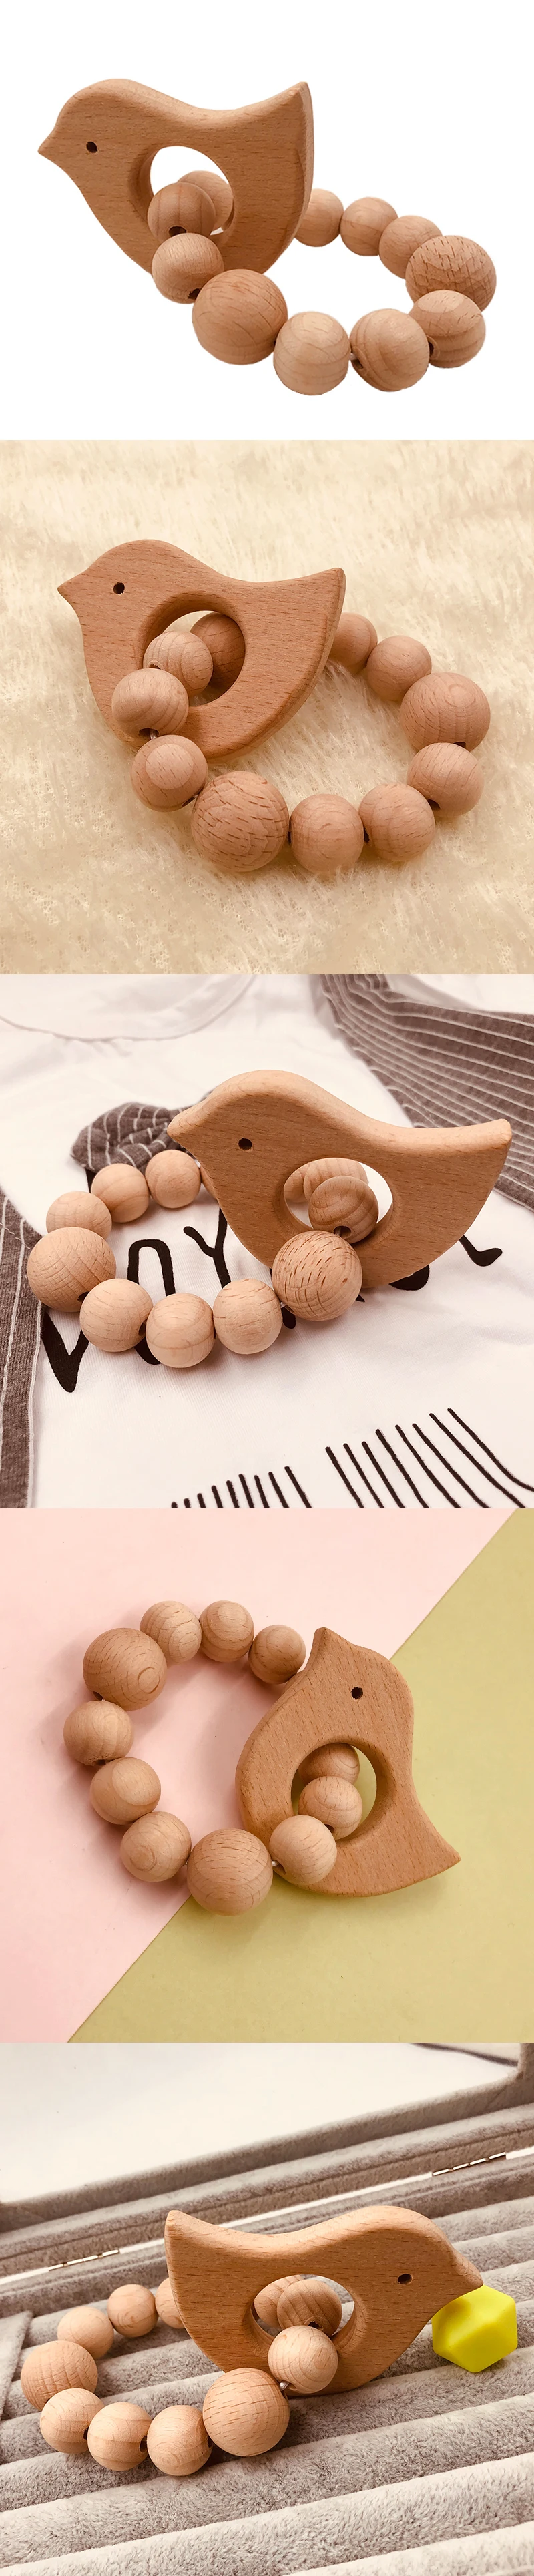 Буковые бусины-прорезыватели, набор колец, необработанный Прорезыватель бука с органический деревянный игрушечный деревянный браслет для животных, детский деревянный прорезыватель, браслет